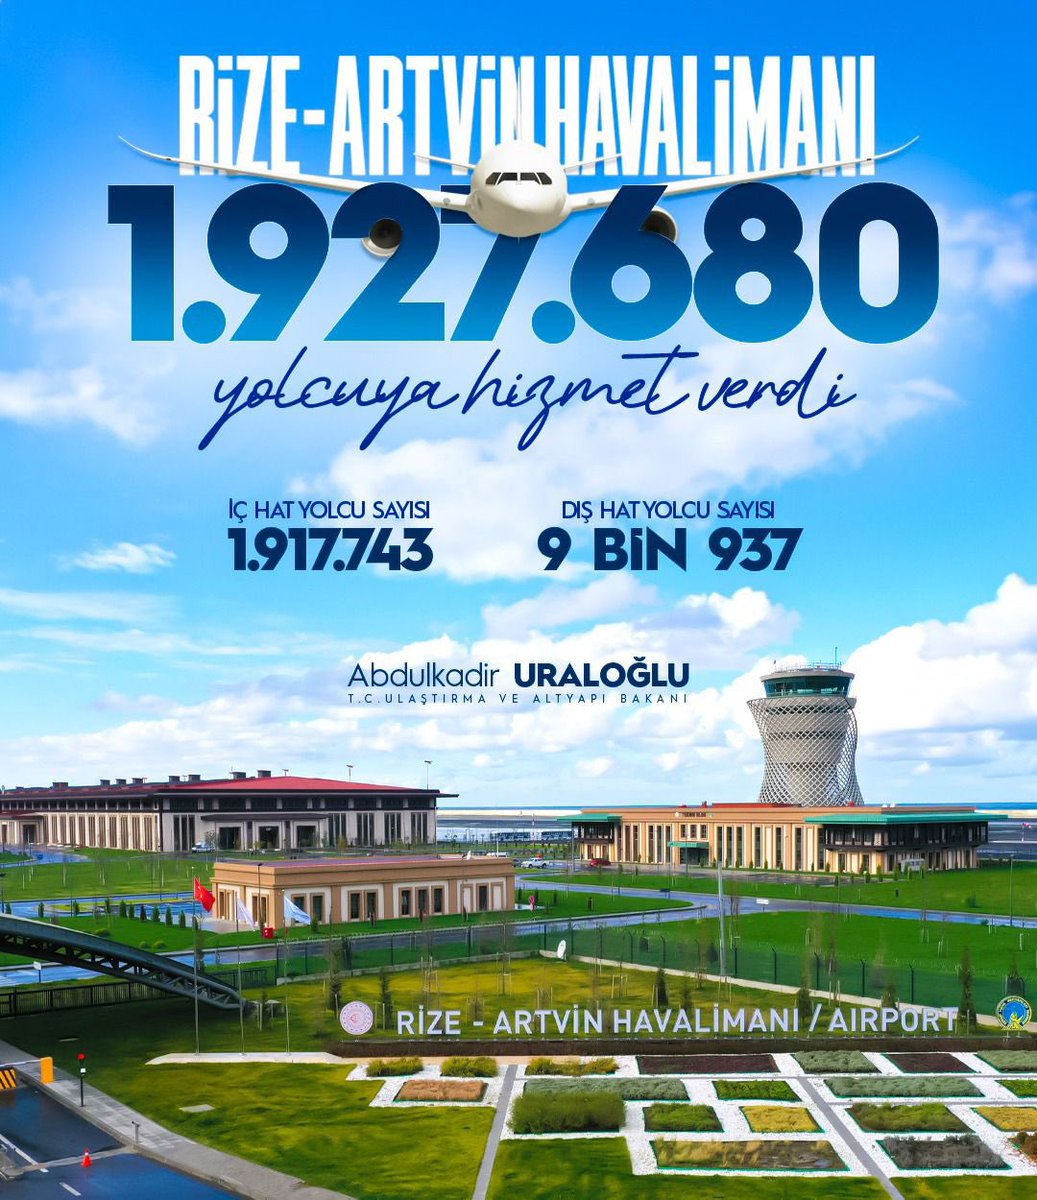 Rize-Artvin Havalimanı 2️⃣ Yıldır Milletimizin Hizmetinde… ✨ Dünyanın örnek eserlerinden Rize-Artvin Havalimanı’nda açıldığı günden Nisan 2024’e kadar; 🚶‍♂️1 milyon 927 bin 680 yolcu seyahat etti. ✈️ 13 bin 901 uçağa hizmet verildi. #TürkiyeHızlanıyor 🇹🇷